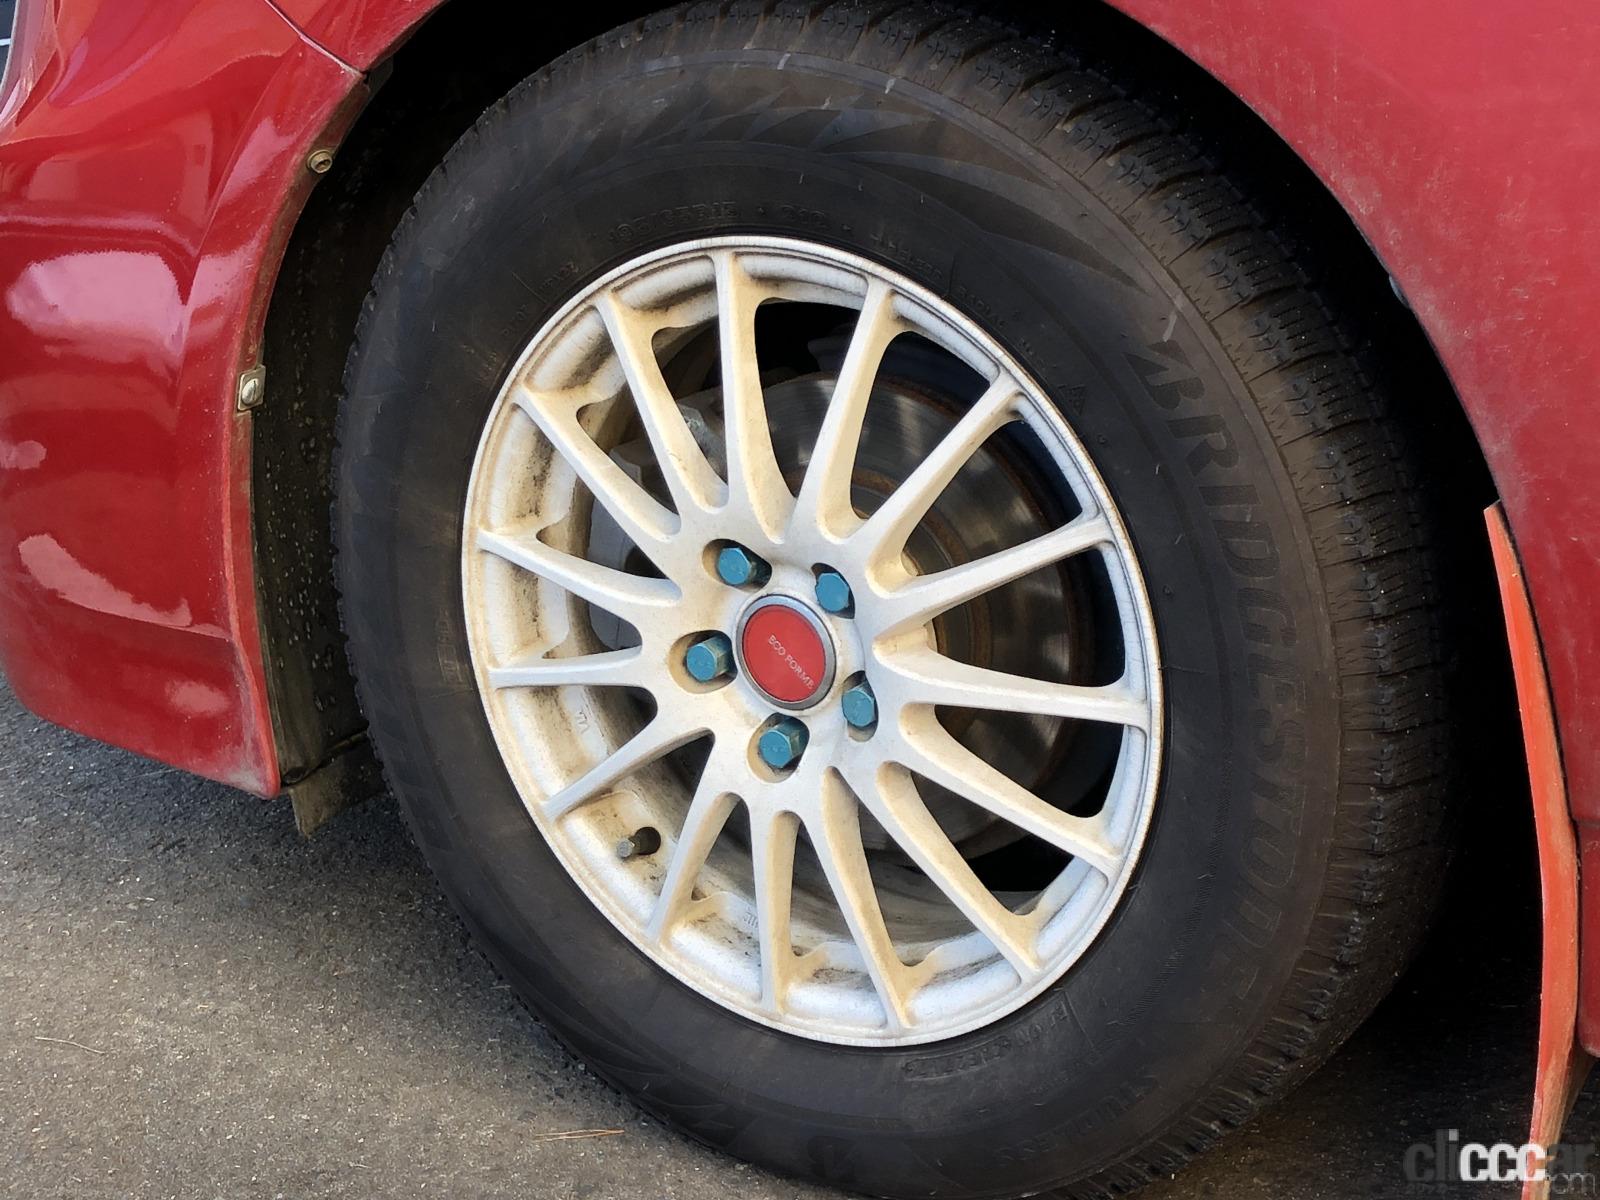 Tire 画像 冬こそ注意 タイヤの空気圧チェックしていますか Clicccar Com